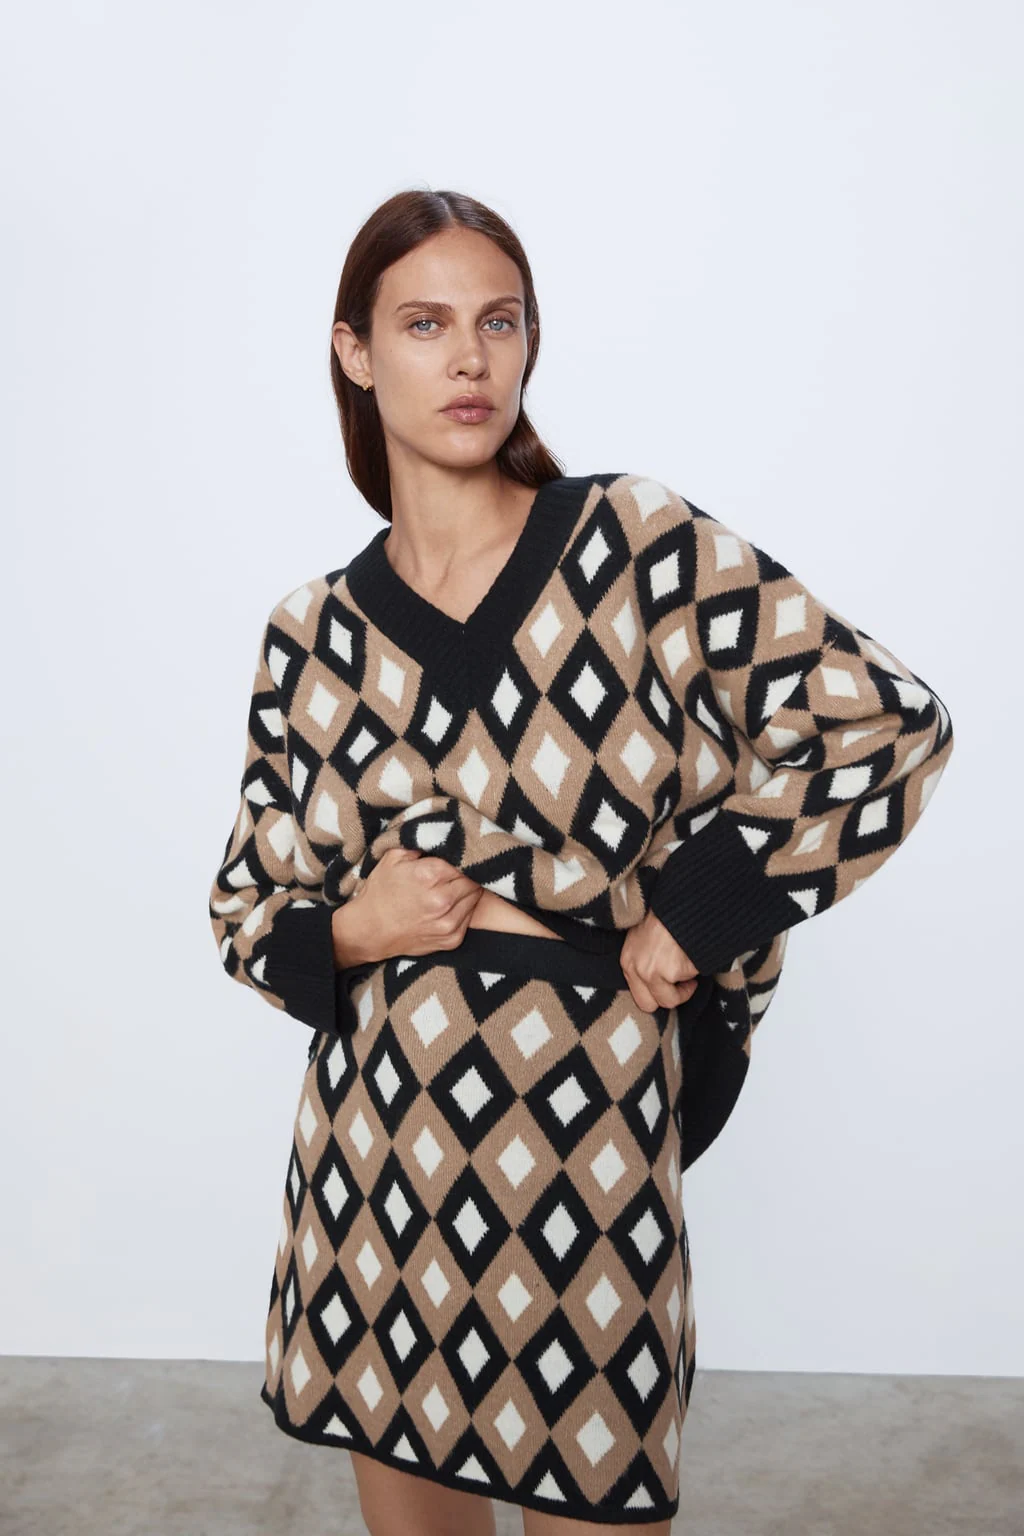 Fotos: 10 conjuntos de punto de Zara y H&M: la tendencia más cómoda que sienta a todas figuras | Mujer Hoy